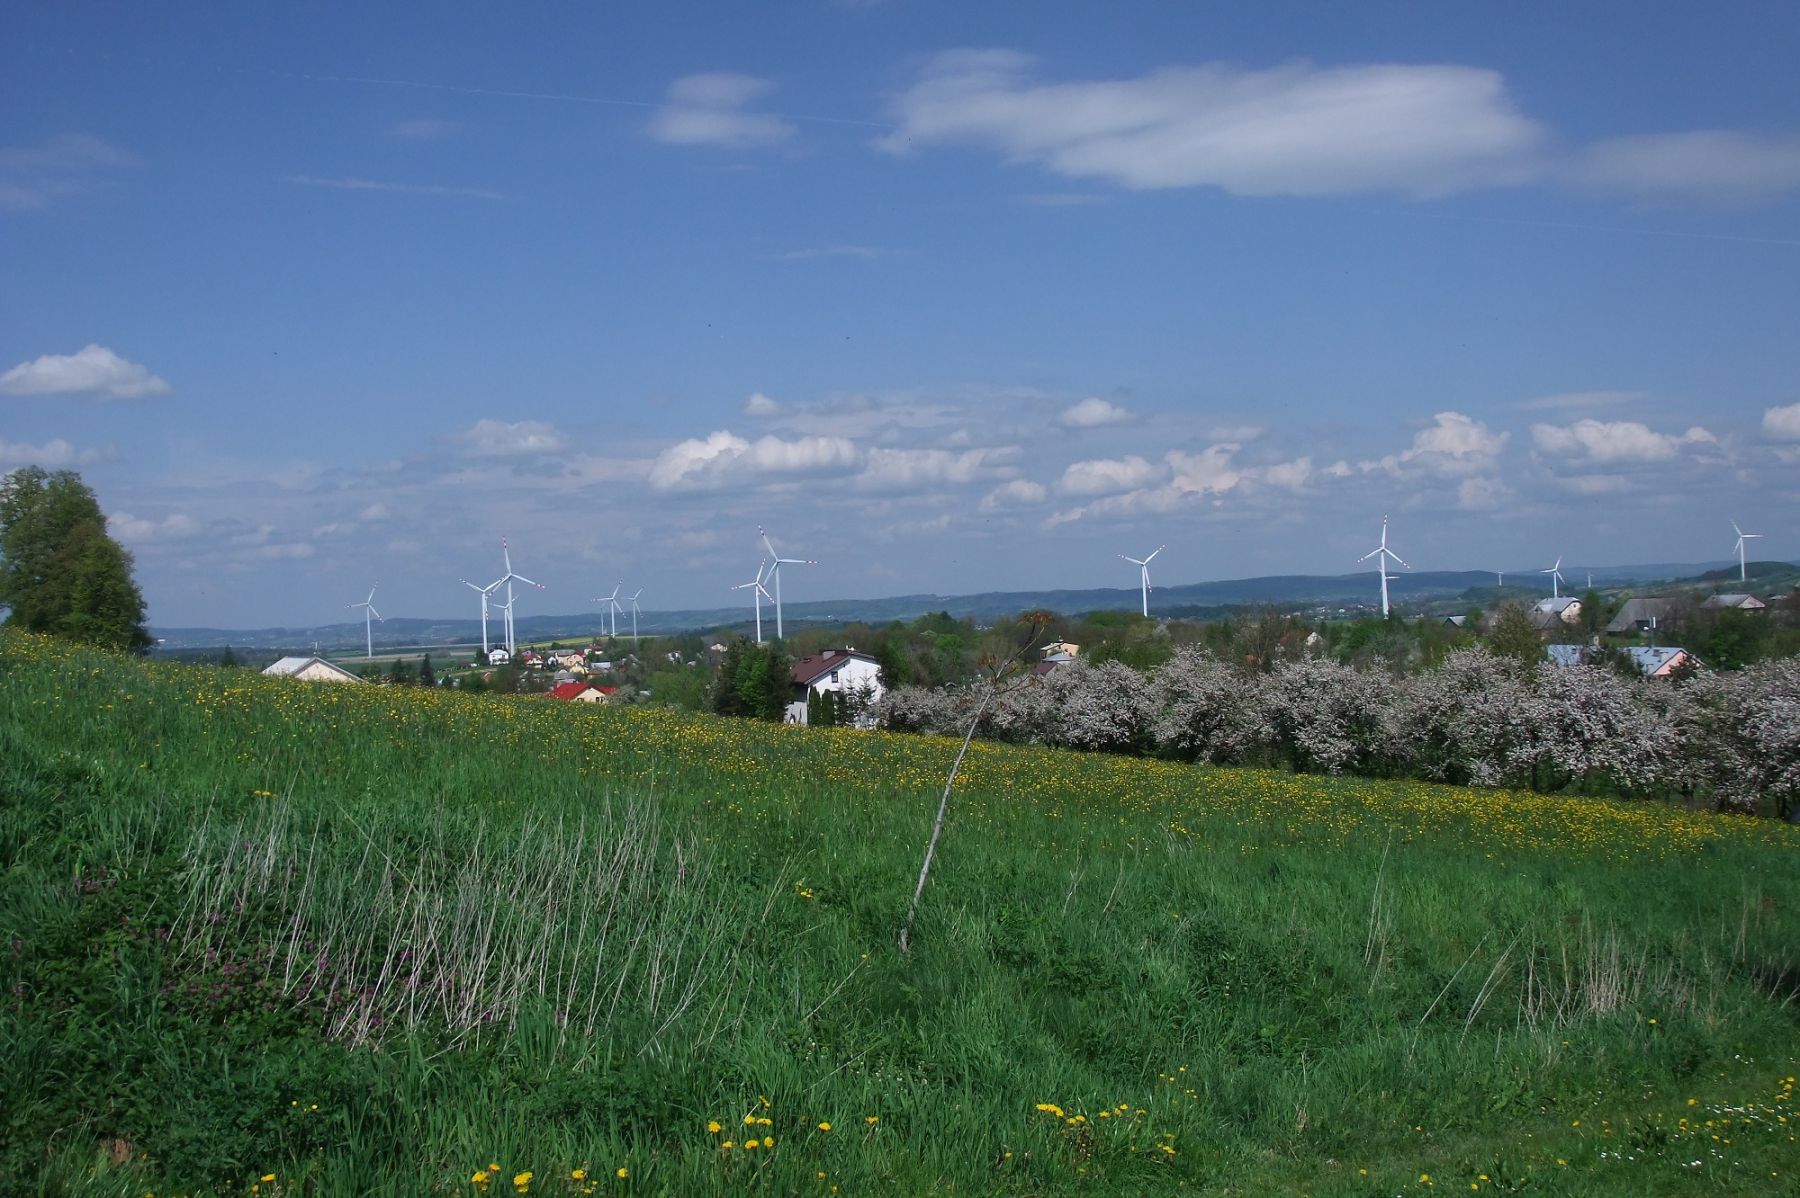 Klimkówka widok na wieś i wiatraki